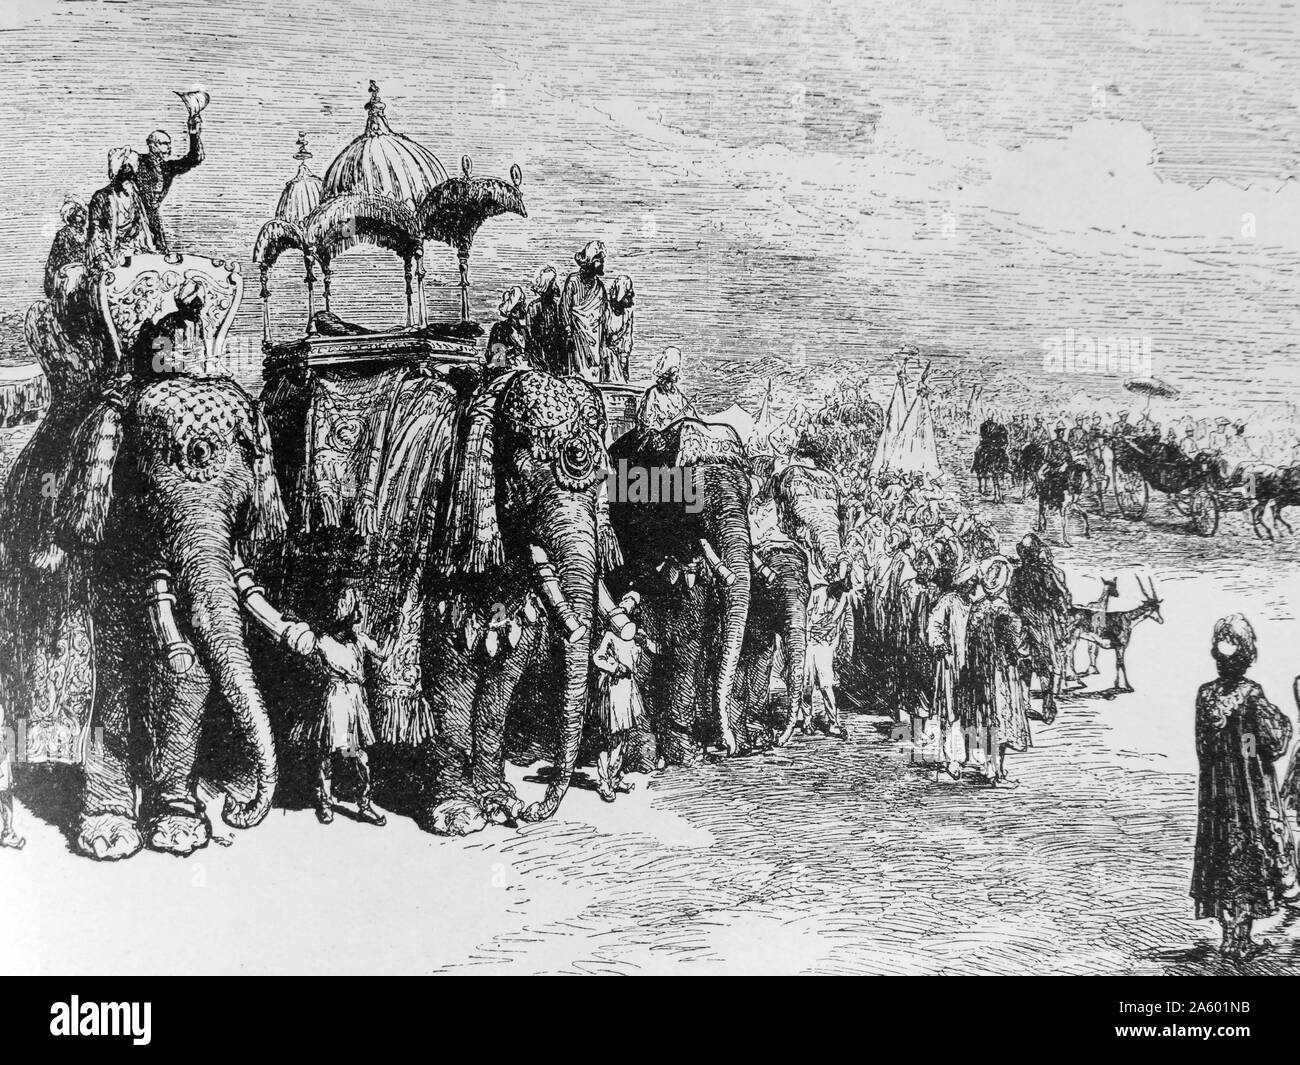 L'entrée de l'état du prince de Galles (futur roi Édouard VII) à Lahore, au cours de son tour de l'Inde et le Pakistan (1876). Princes indiens sur les éléphants décorés bordent la route. Banque D'Images